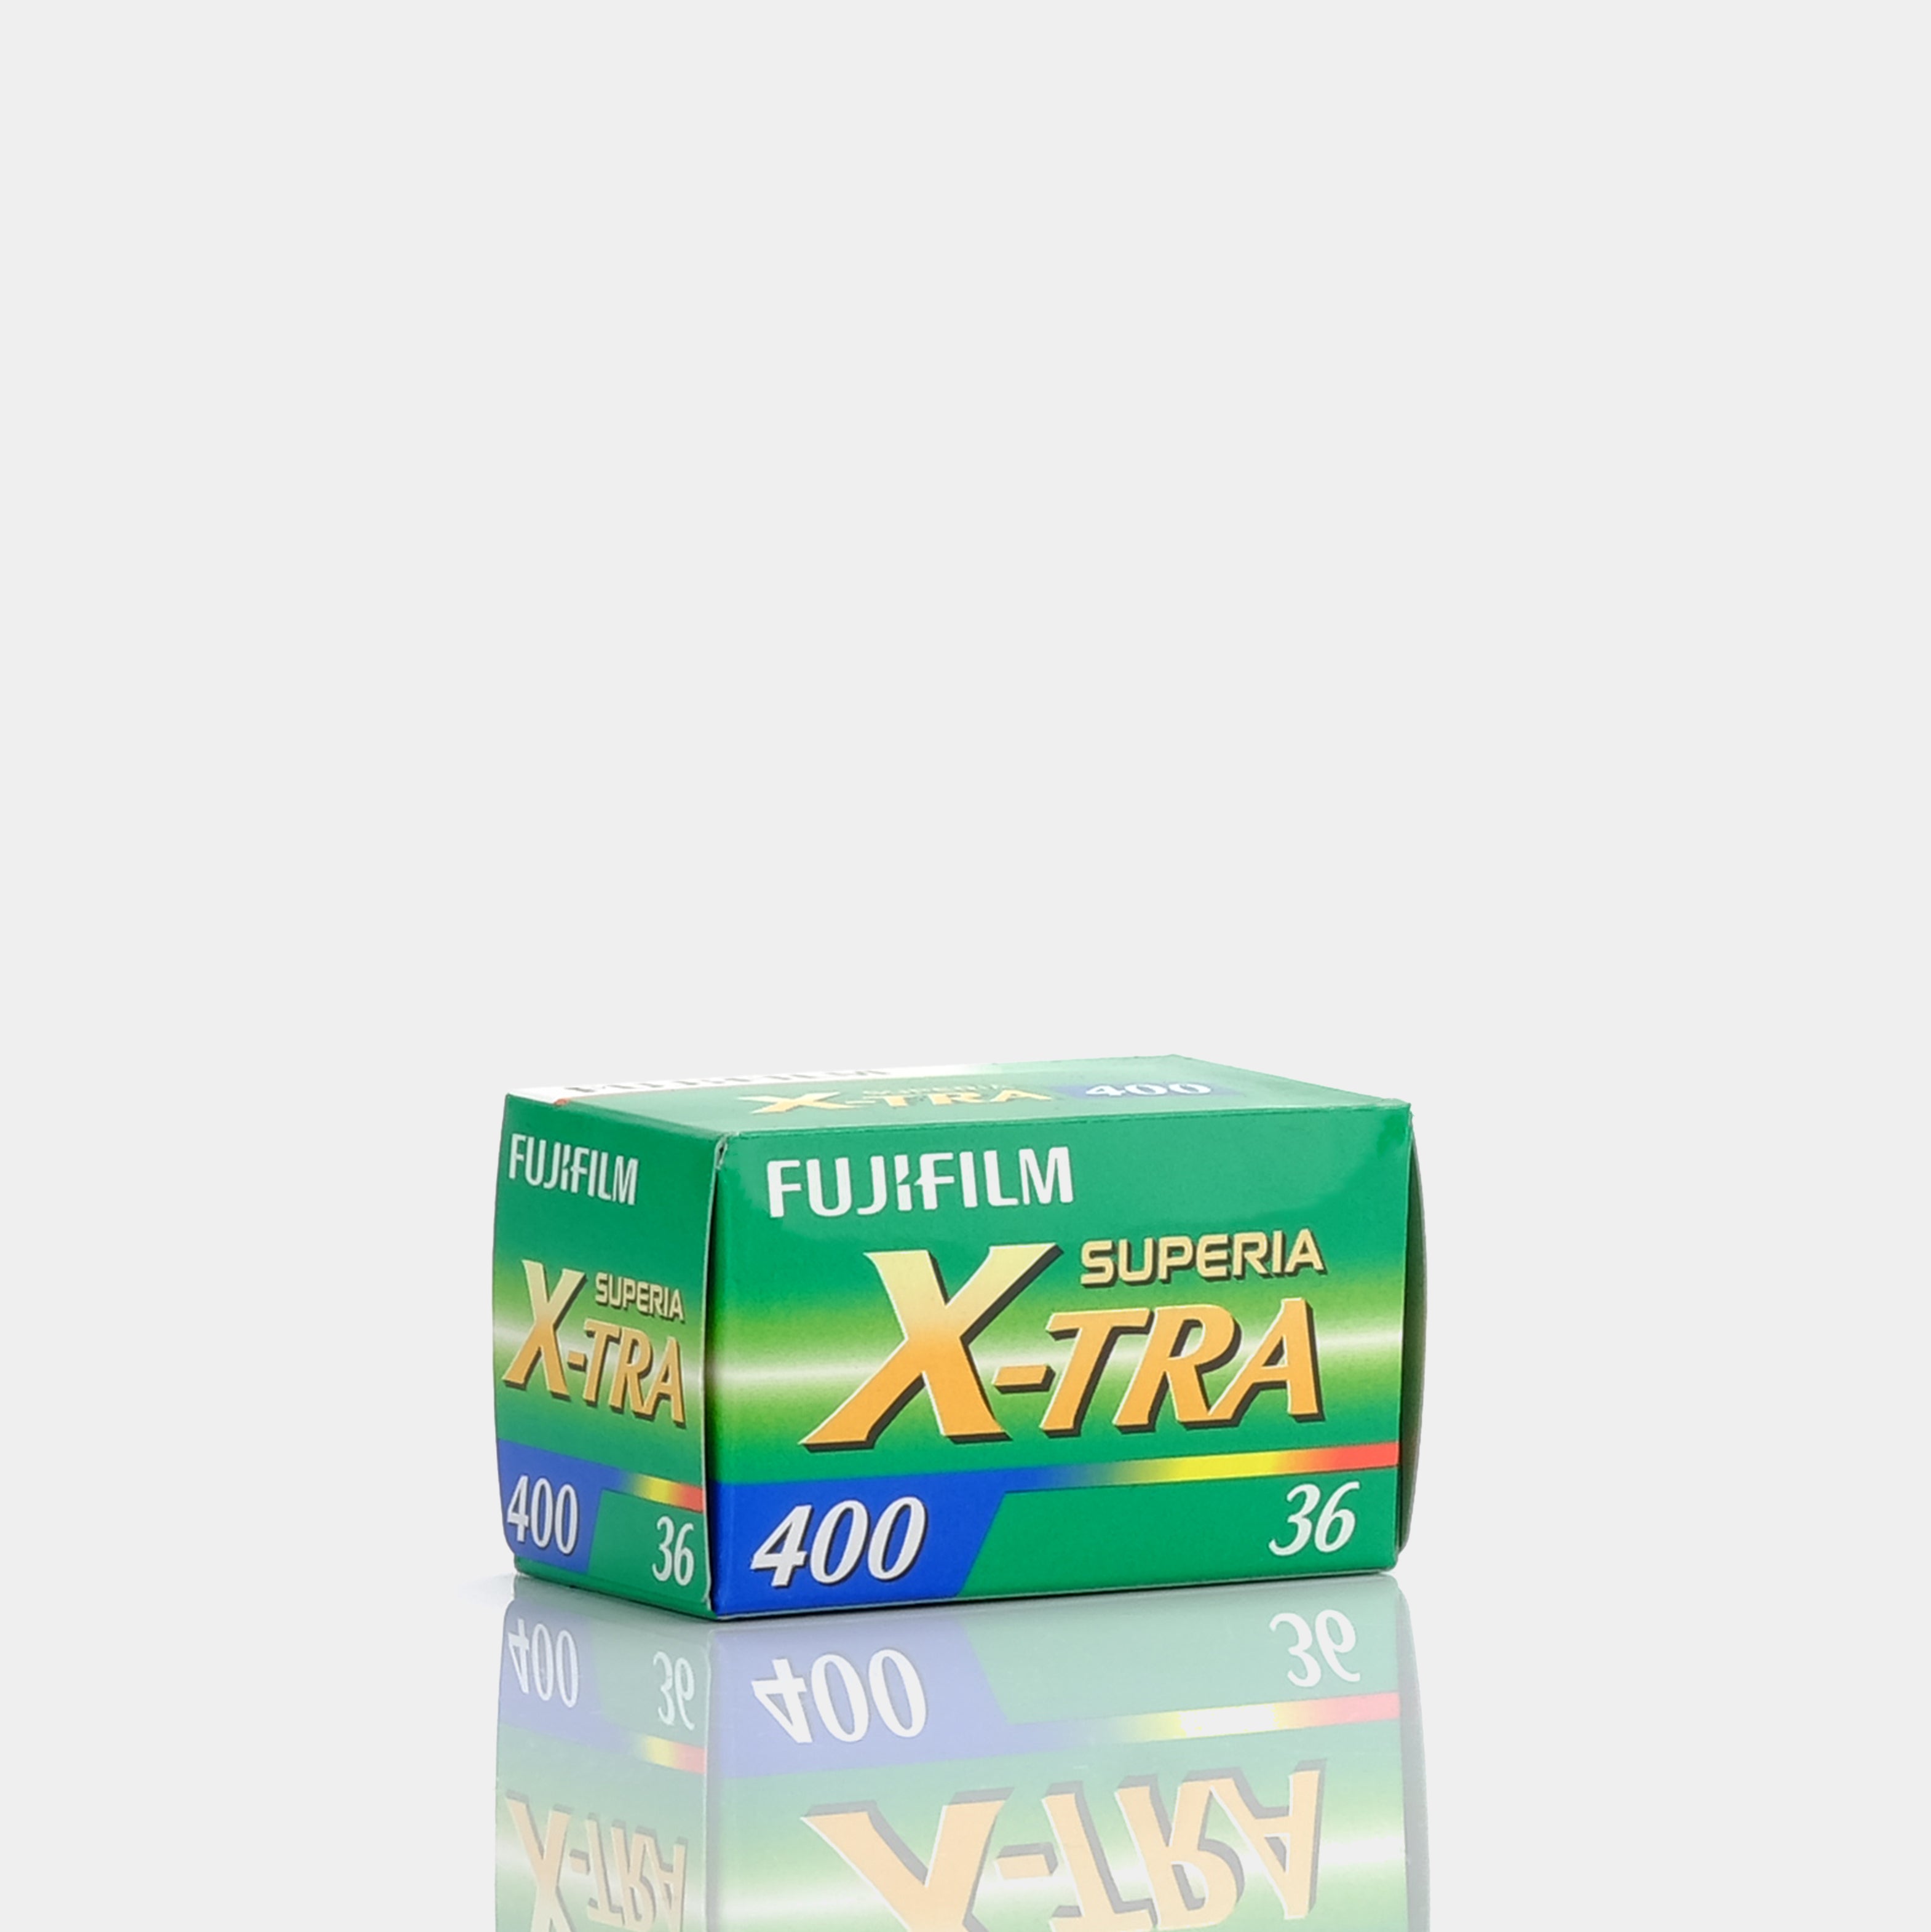 Fujifilm Xtra 400 35mm